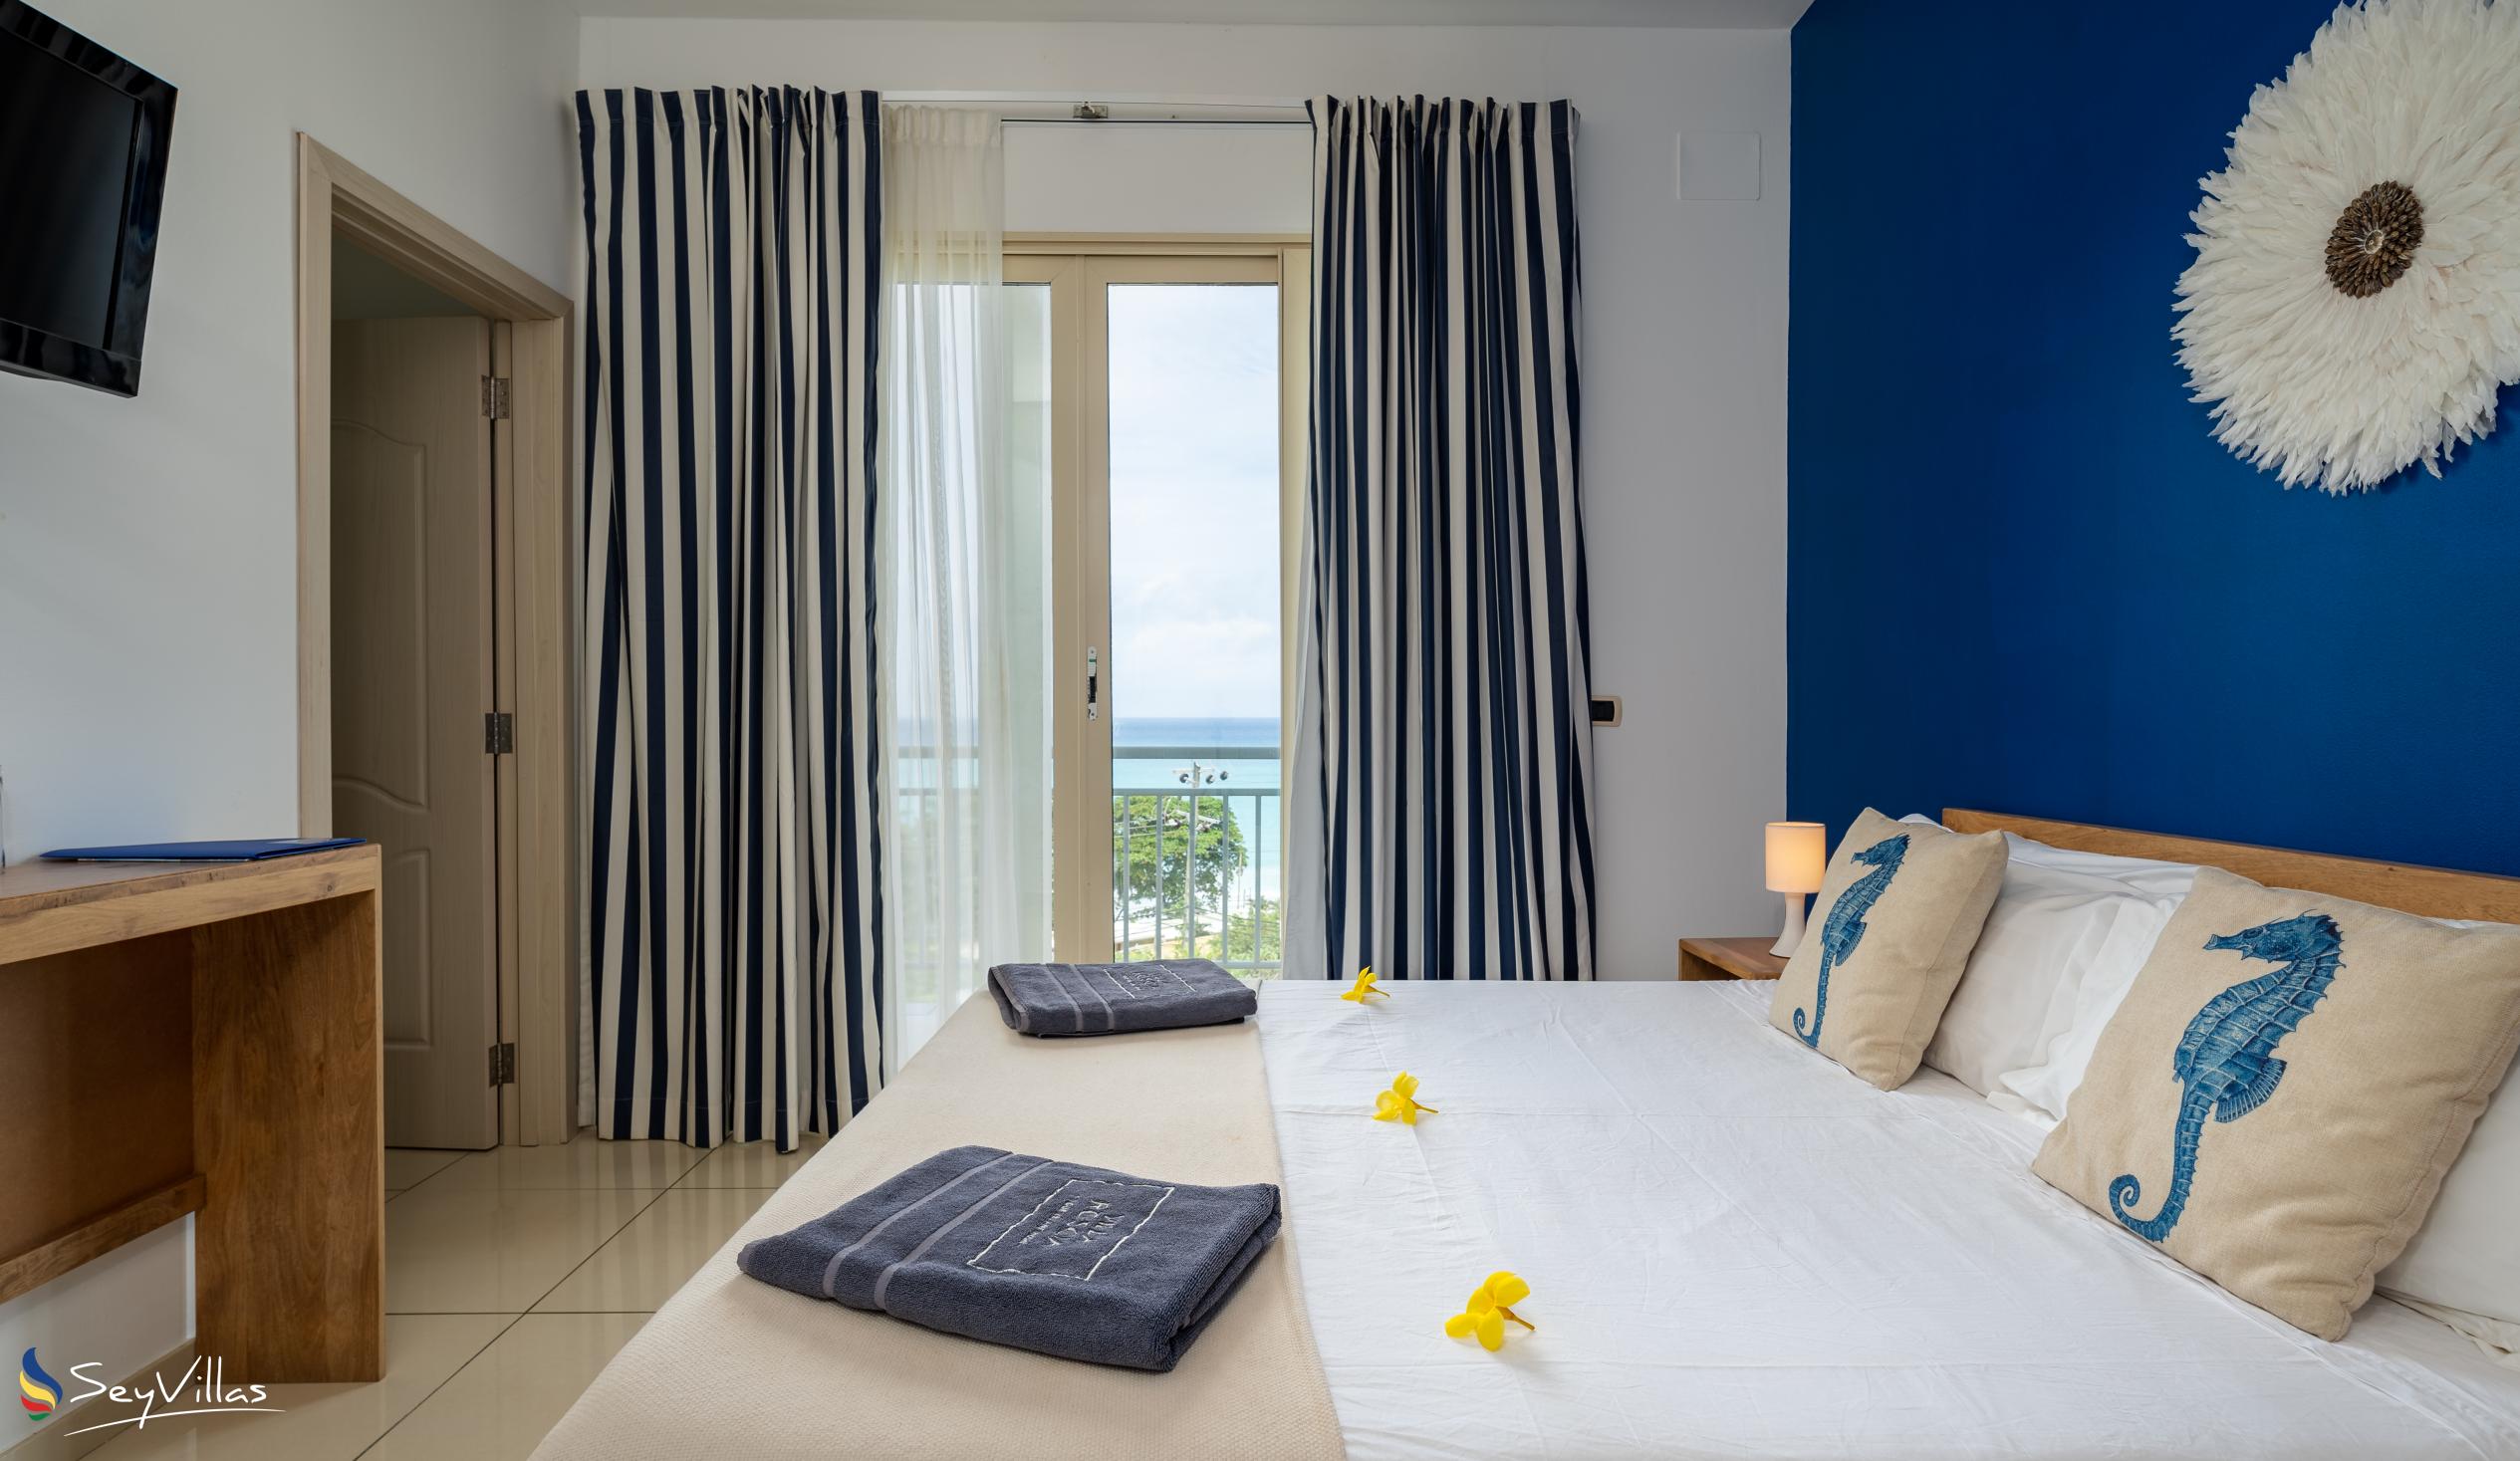 Photo 52: Villa Roscia - Ocean View Room - Mahé (Seychelles)